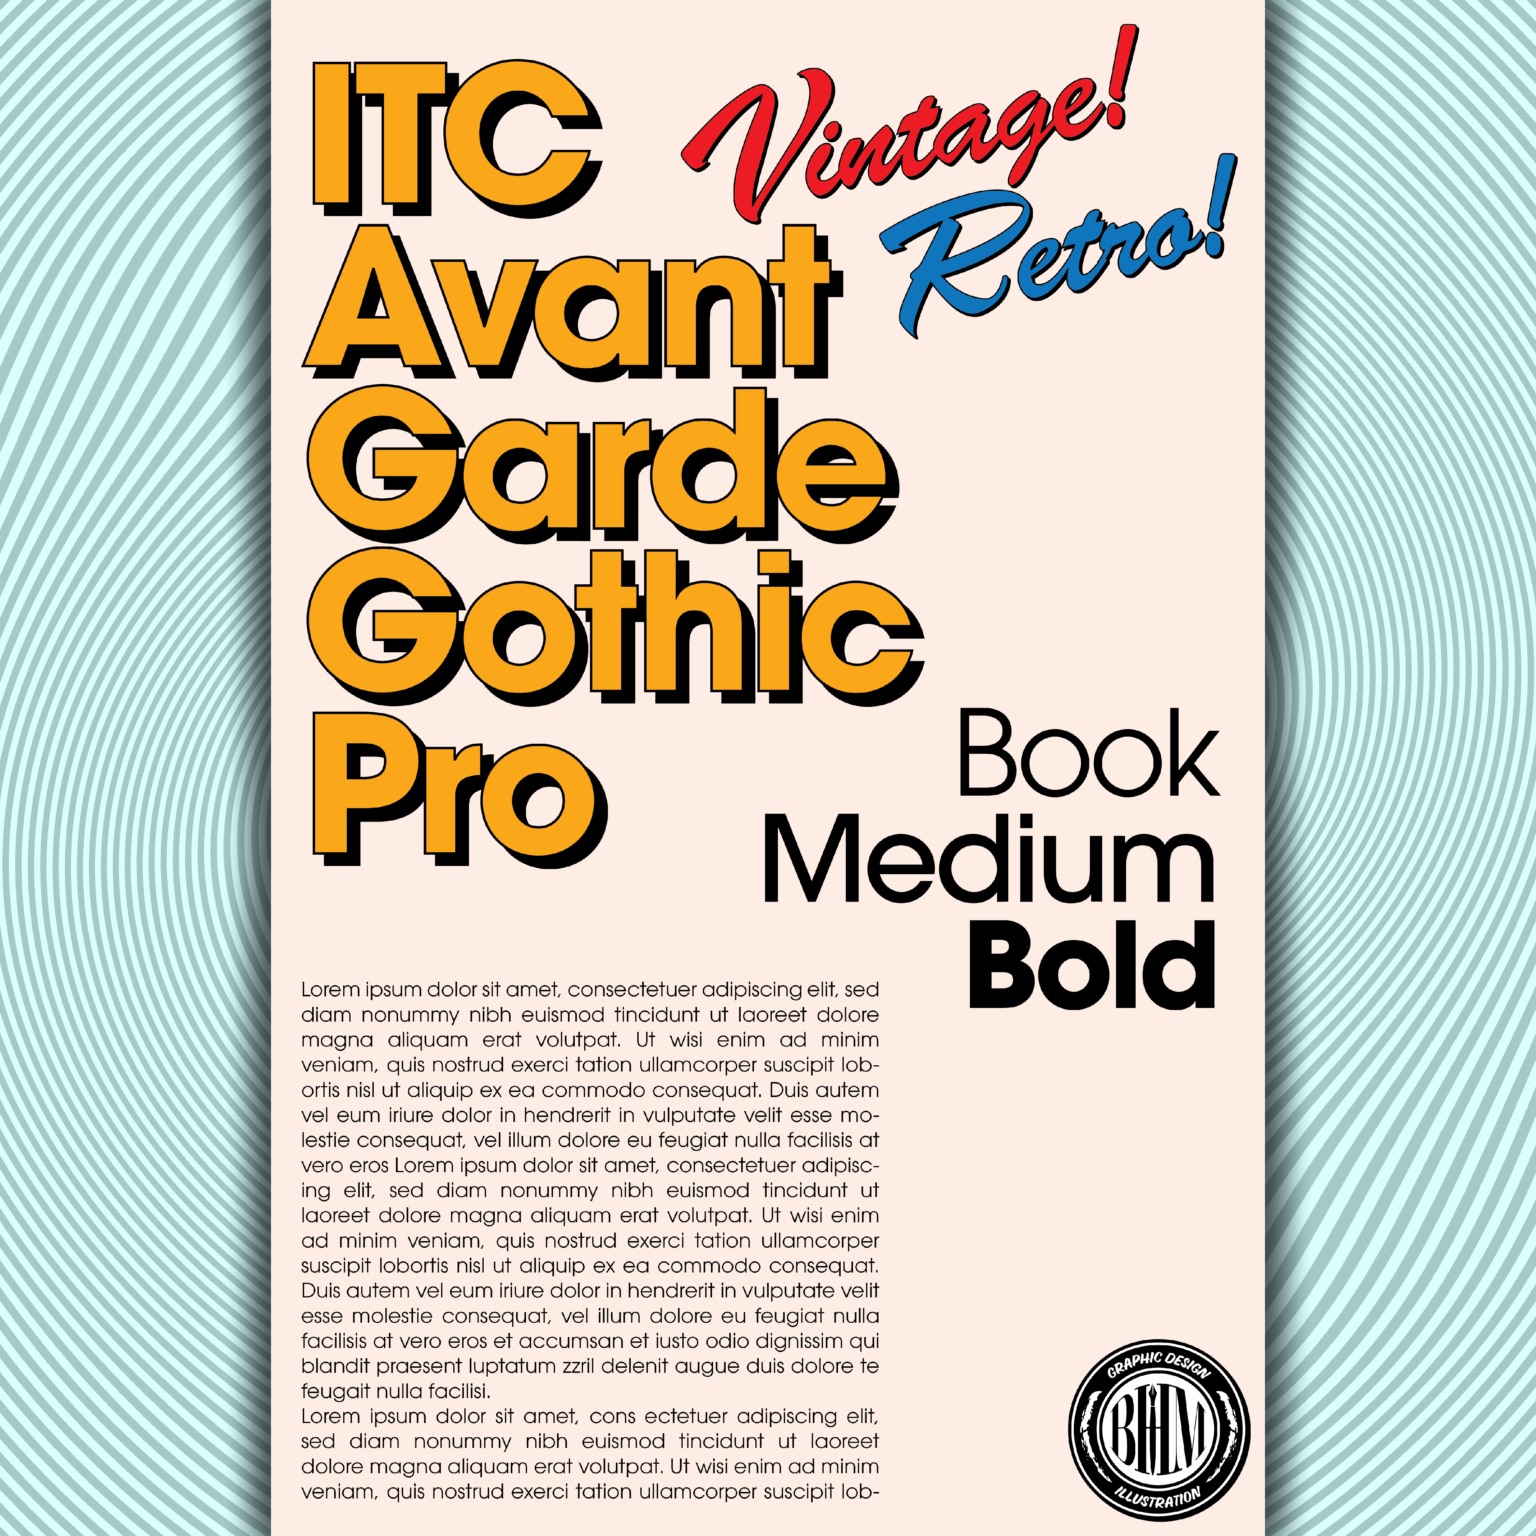 ITC Avant Garde Gothic Pro Font Showcase